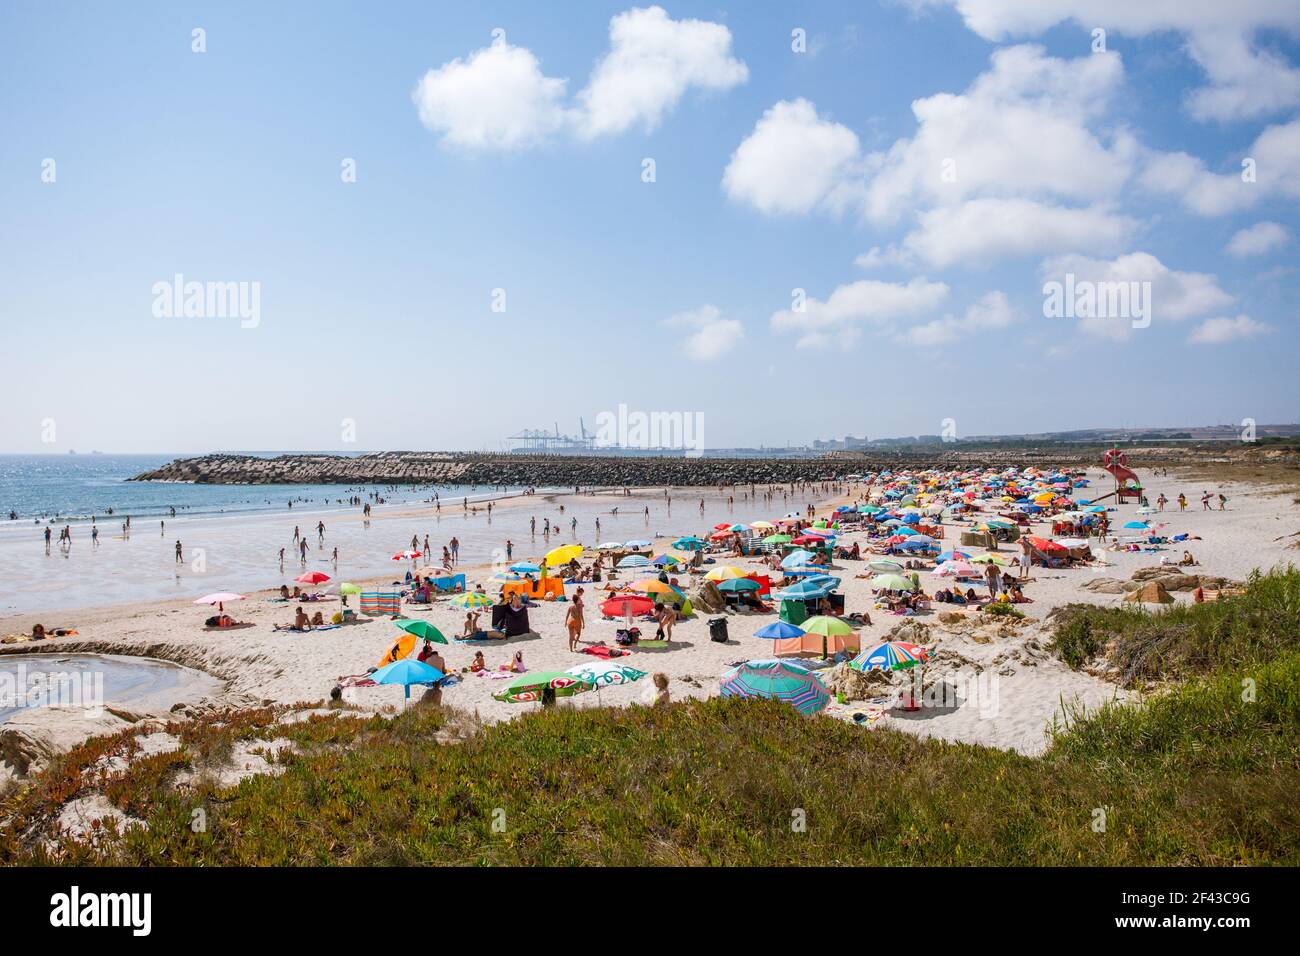 Praia de São Torpes, près de Sines, sur la côte atlantique de l'Alentejo, Portugal Banque D'Images